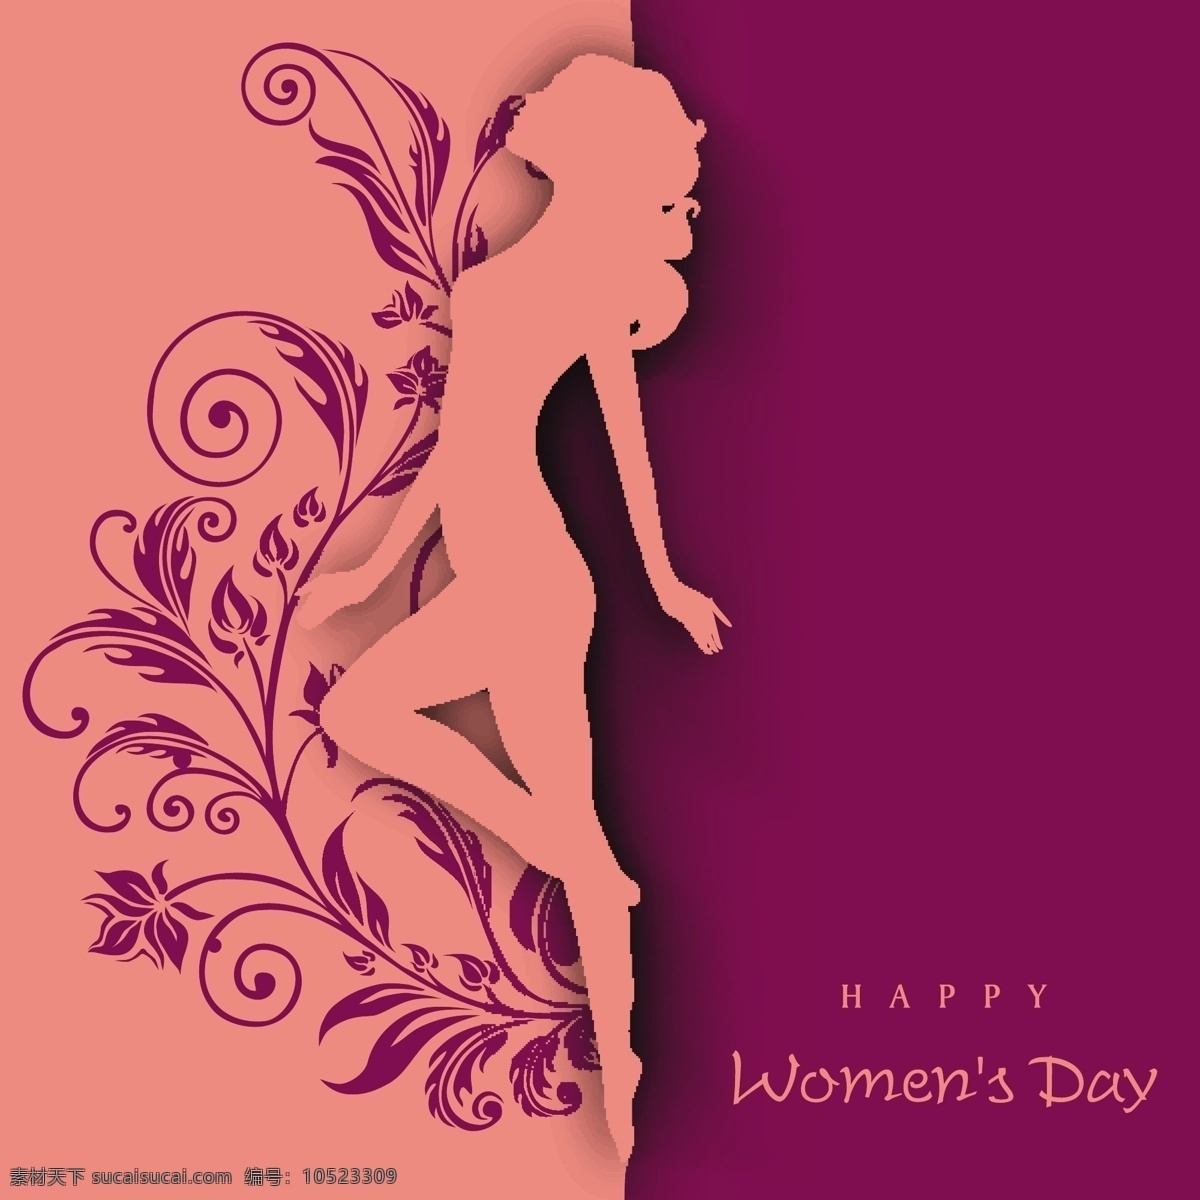 创意 三八妇女节 贺卡 妇女节 海报 橙色 紫色 舞姿 女孩 轮廓 妇女节贺卡 粉色